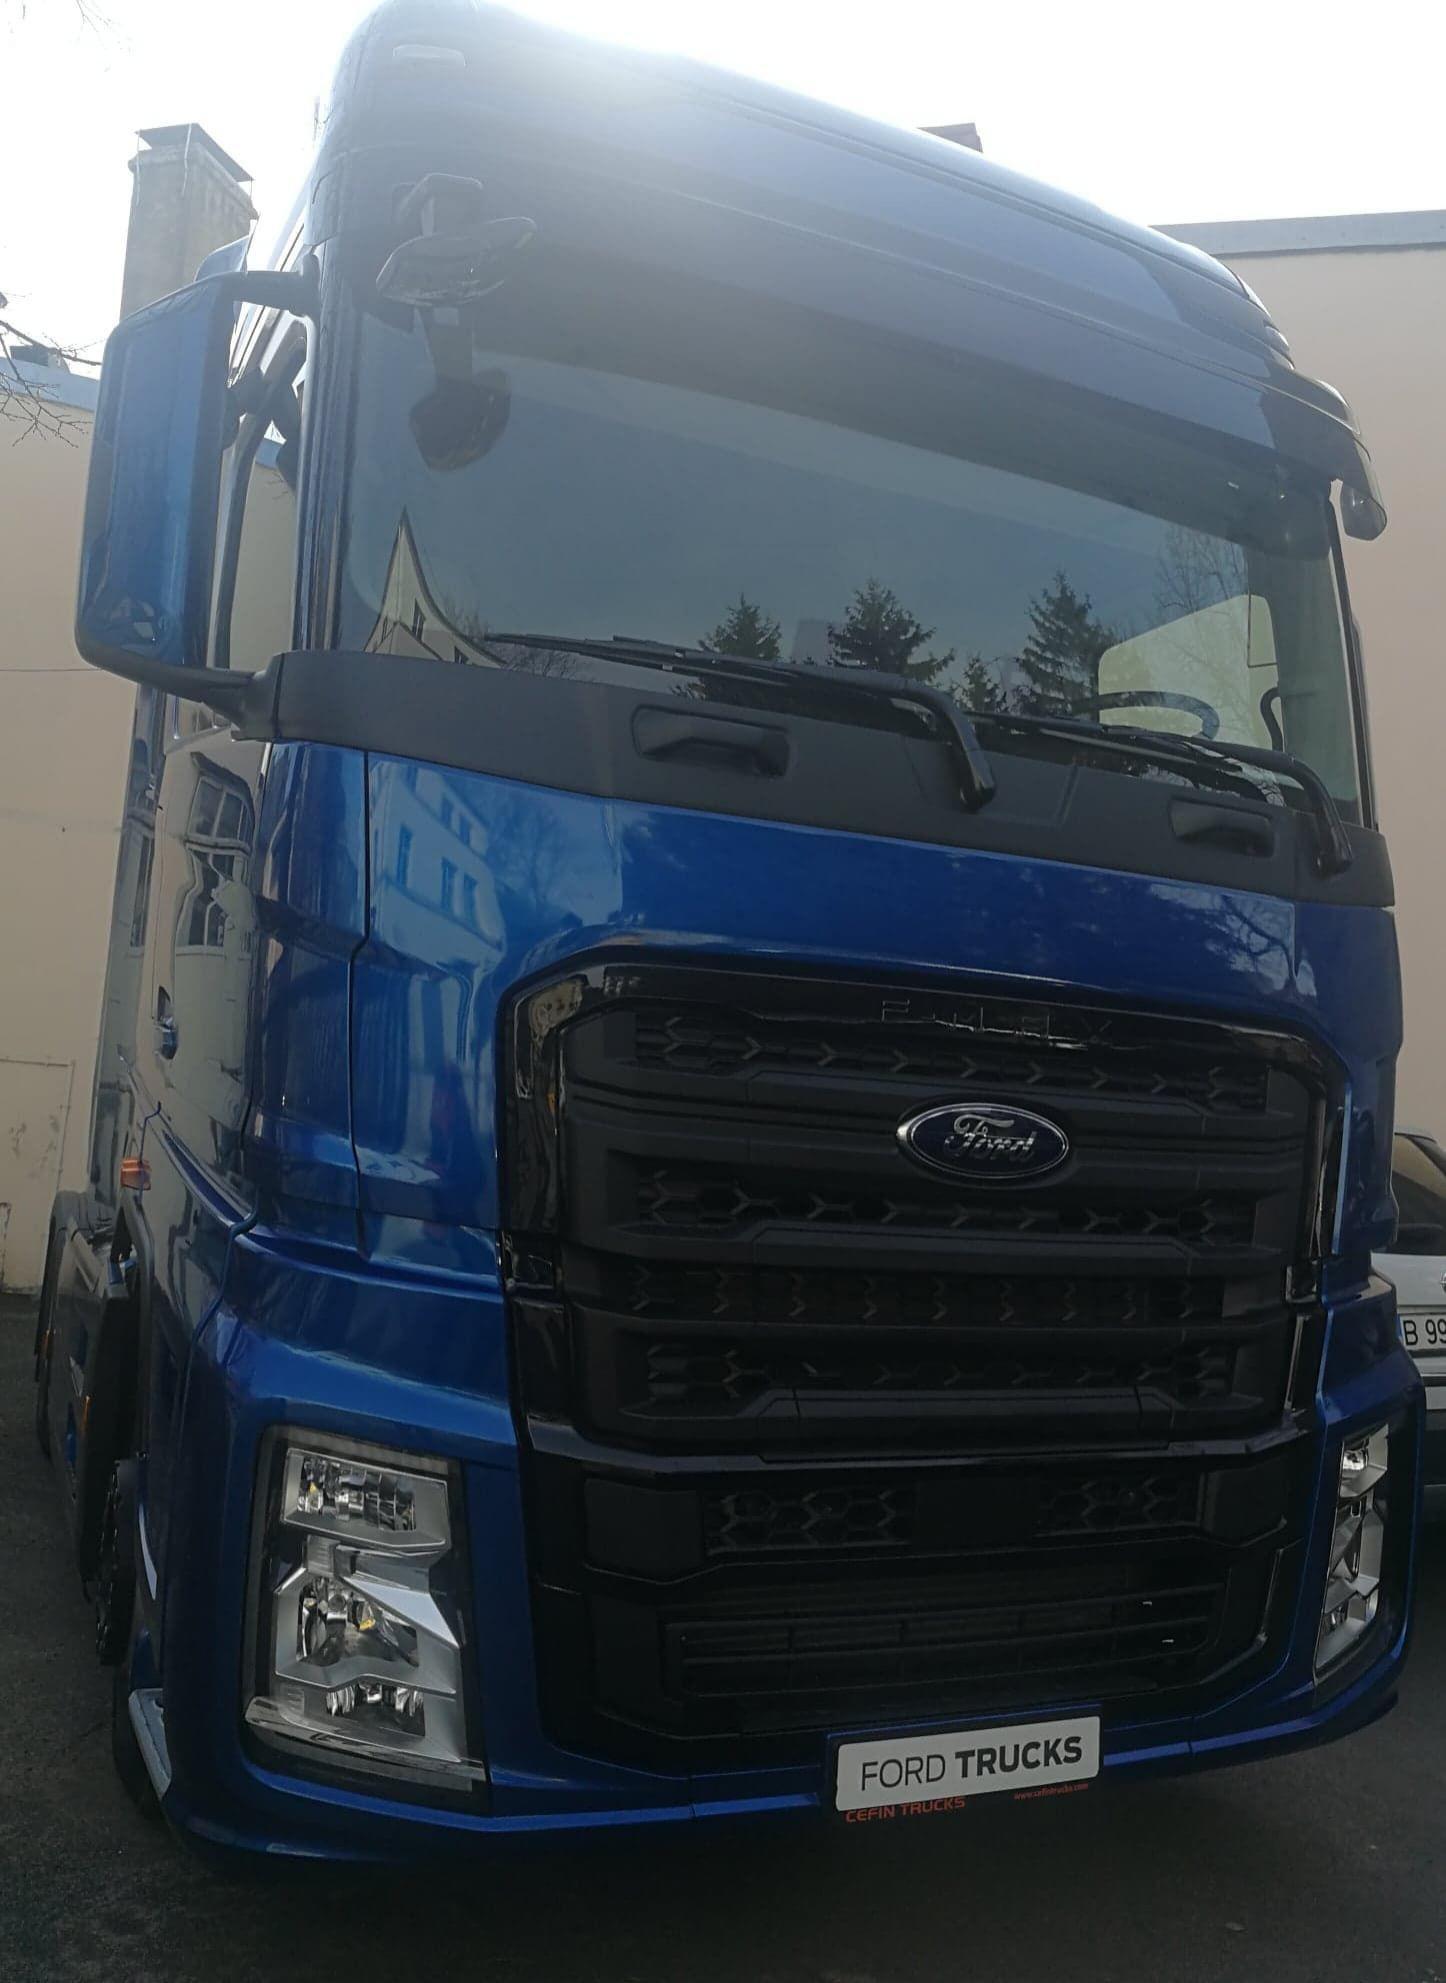 Afacerile Cefin Trucks, importatorul Ford Trucks în România, au crescut anul trecut cu 45%, la 63 de milioane de euro. Compania vrea să ajungă la o cotă de piaţă de 10% în acest an